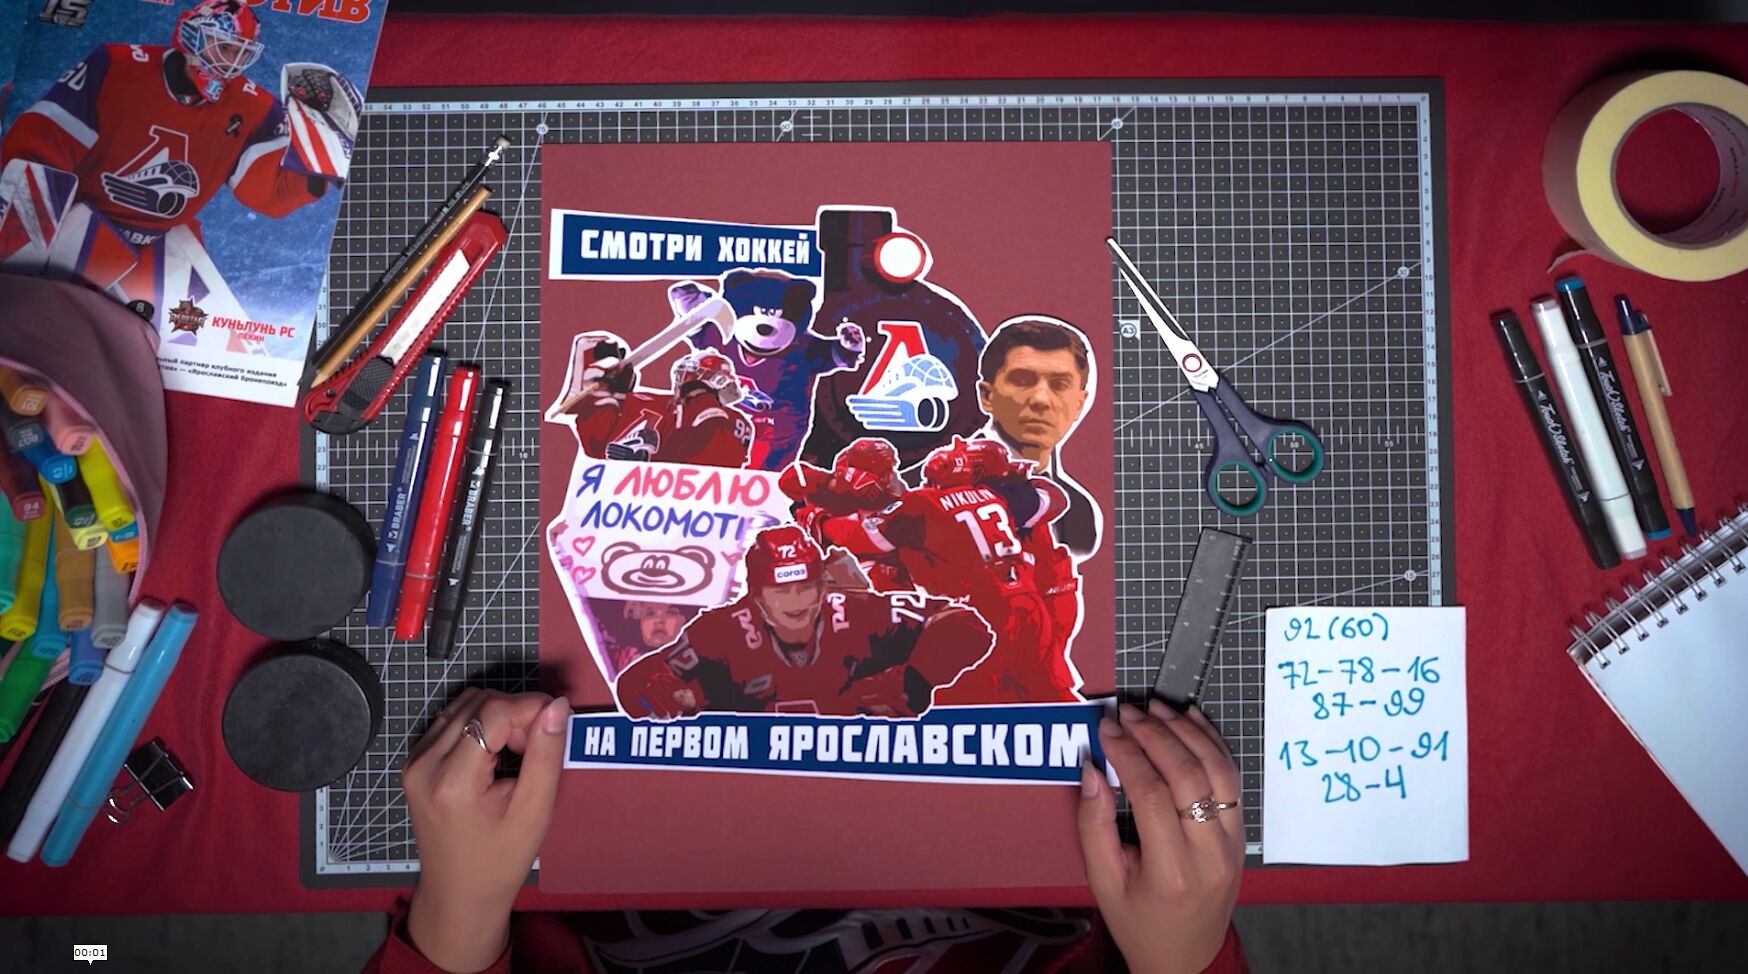 Смотри хоккей - на Первом Ярославском!